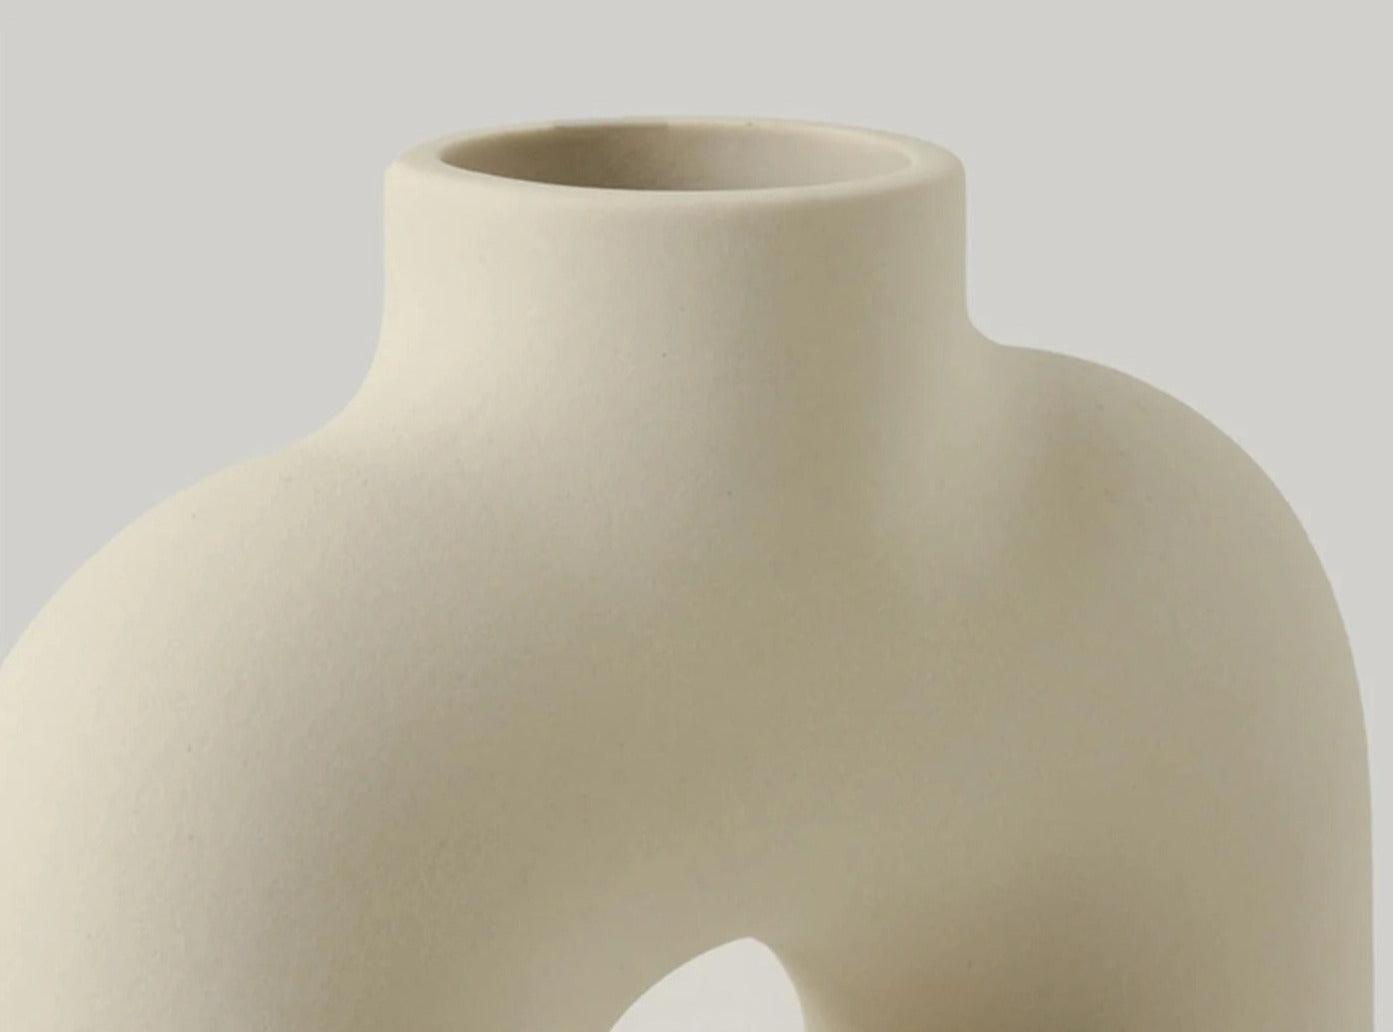 Nordic Tube Vase | Ceramic - JUGLANA